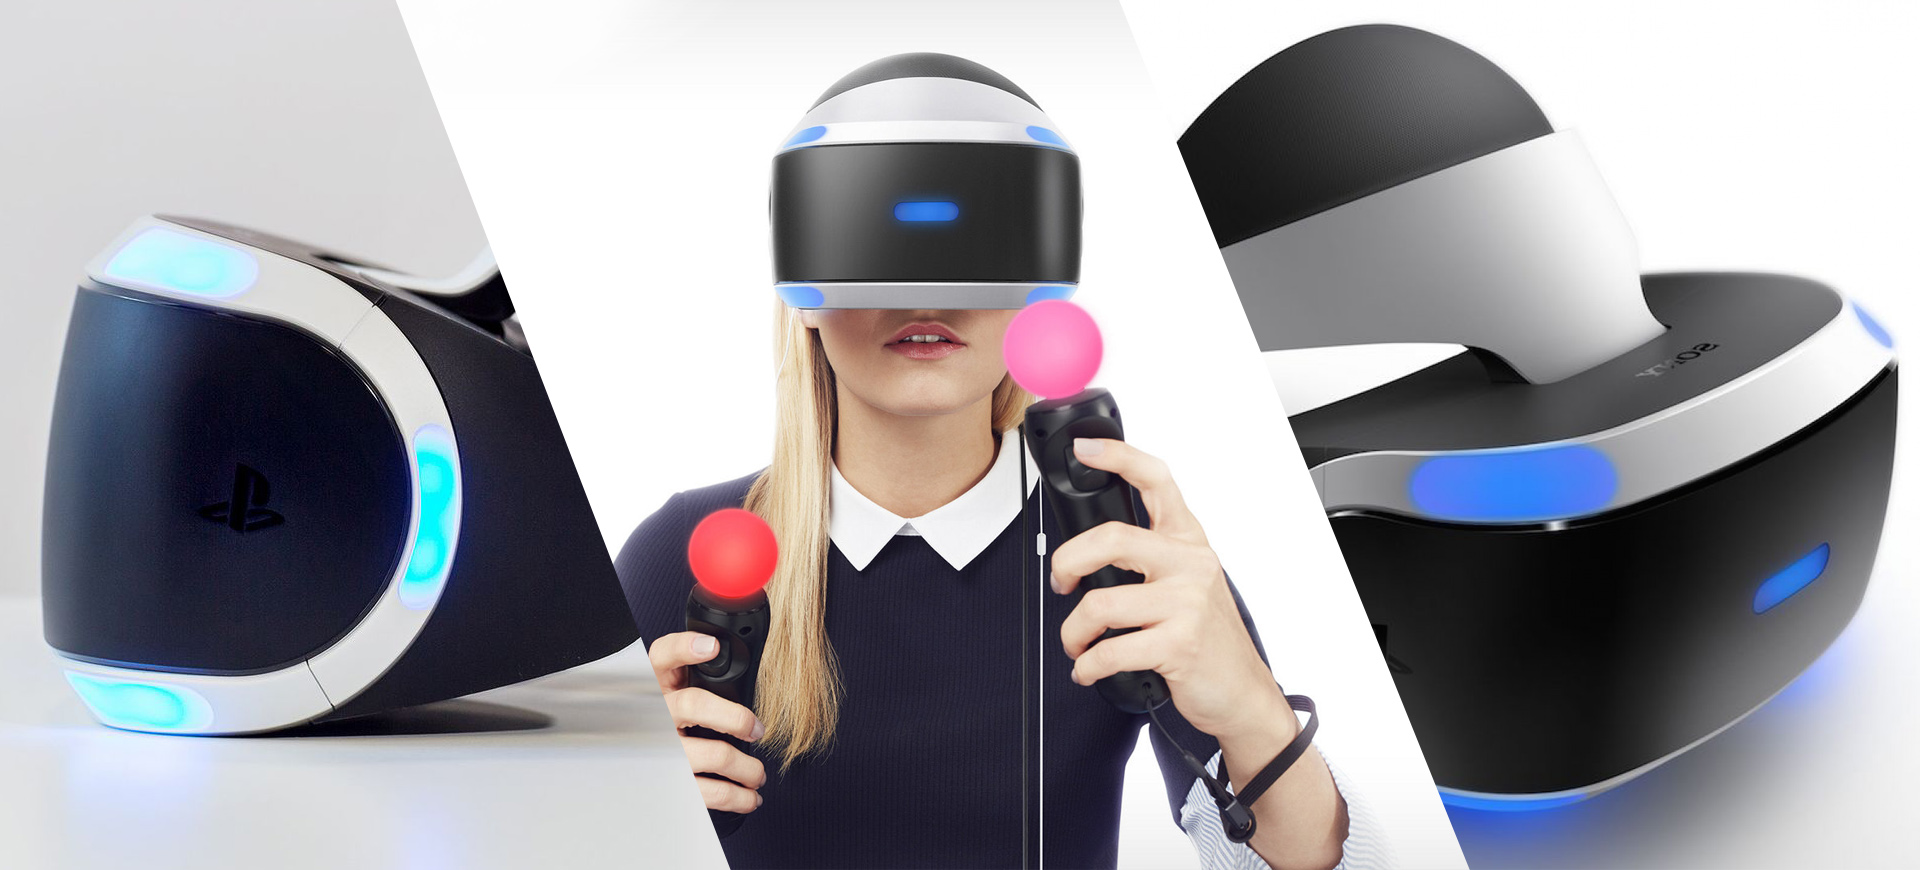 PlayStation VR - Khuấy động cùng thực tế ảo